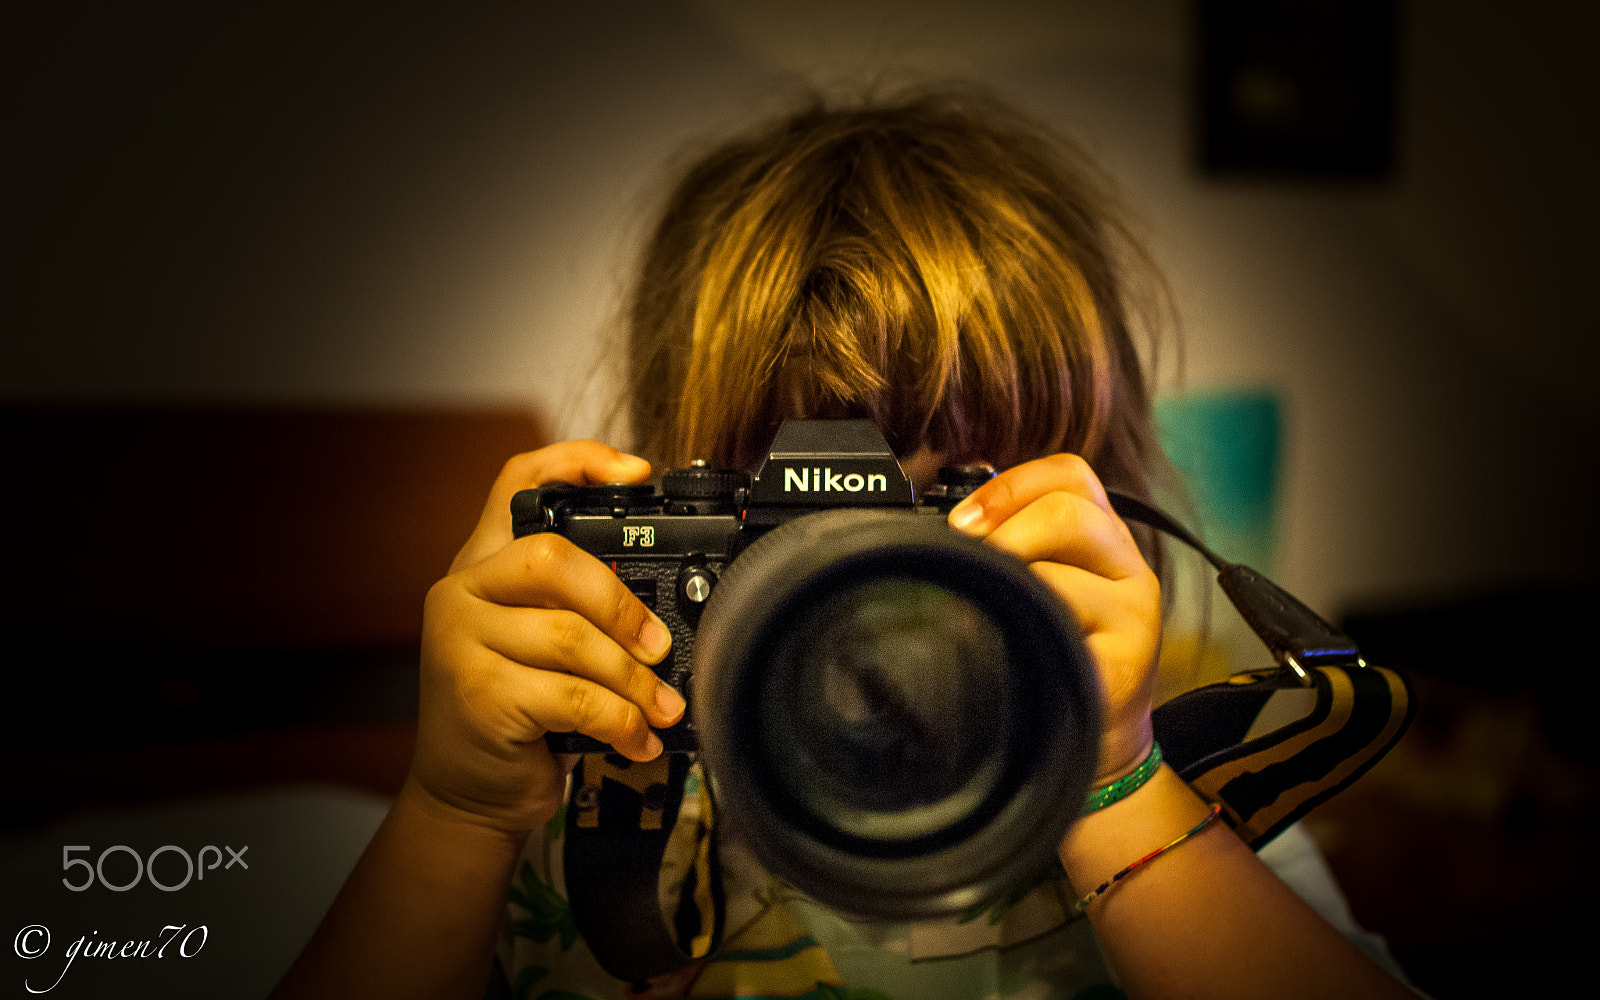 Nikon D2X + Nikon AF-S DX Nikkor 35mm F1.8G sample photo. Old nikon f3 photography